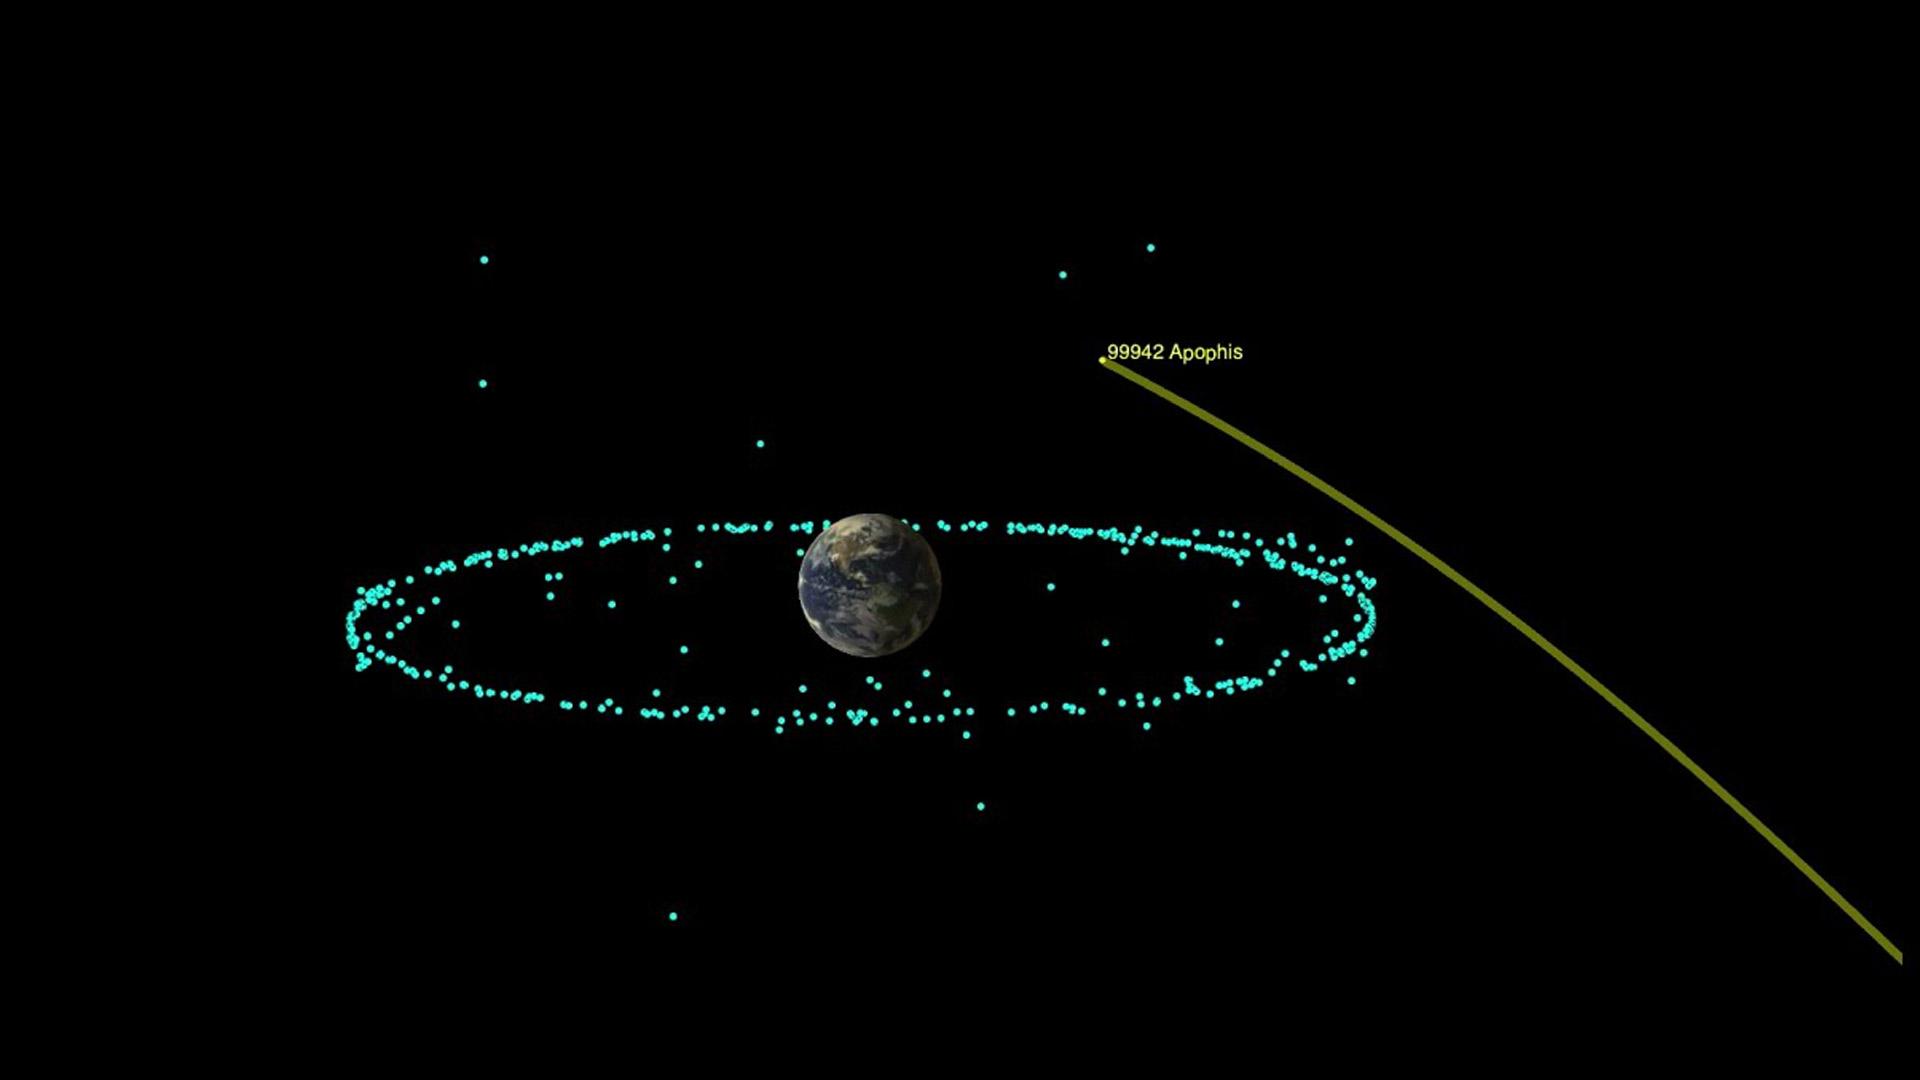 Ricostruzione virtuale del passaggio ravvicinato di Apophis sulla Terra.